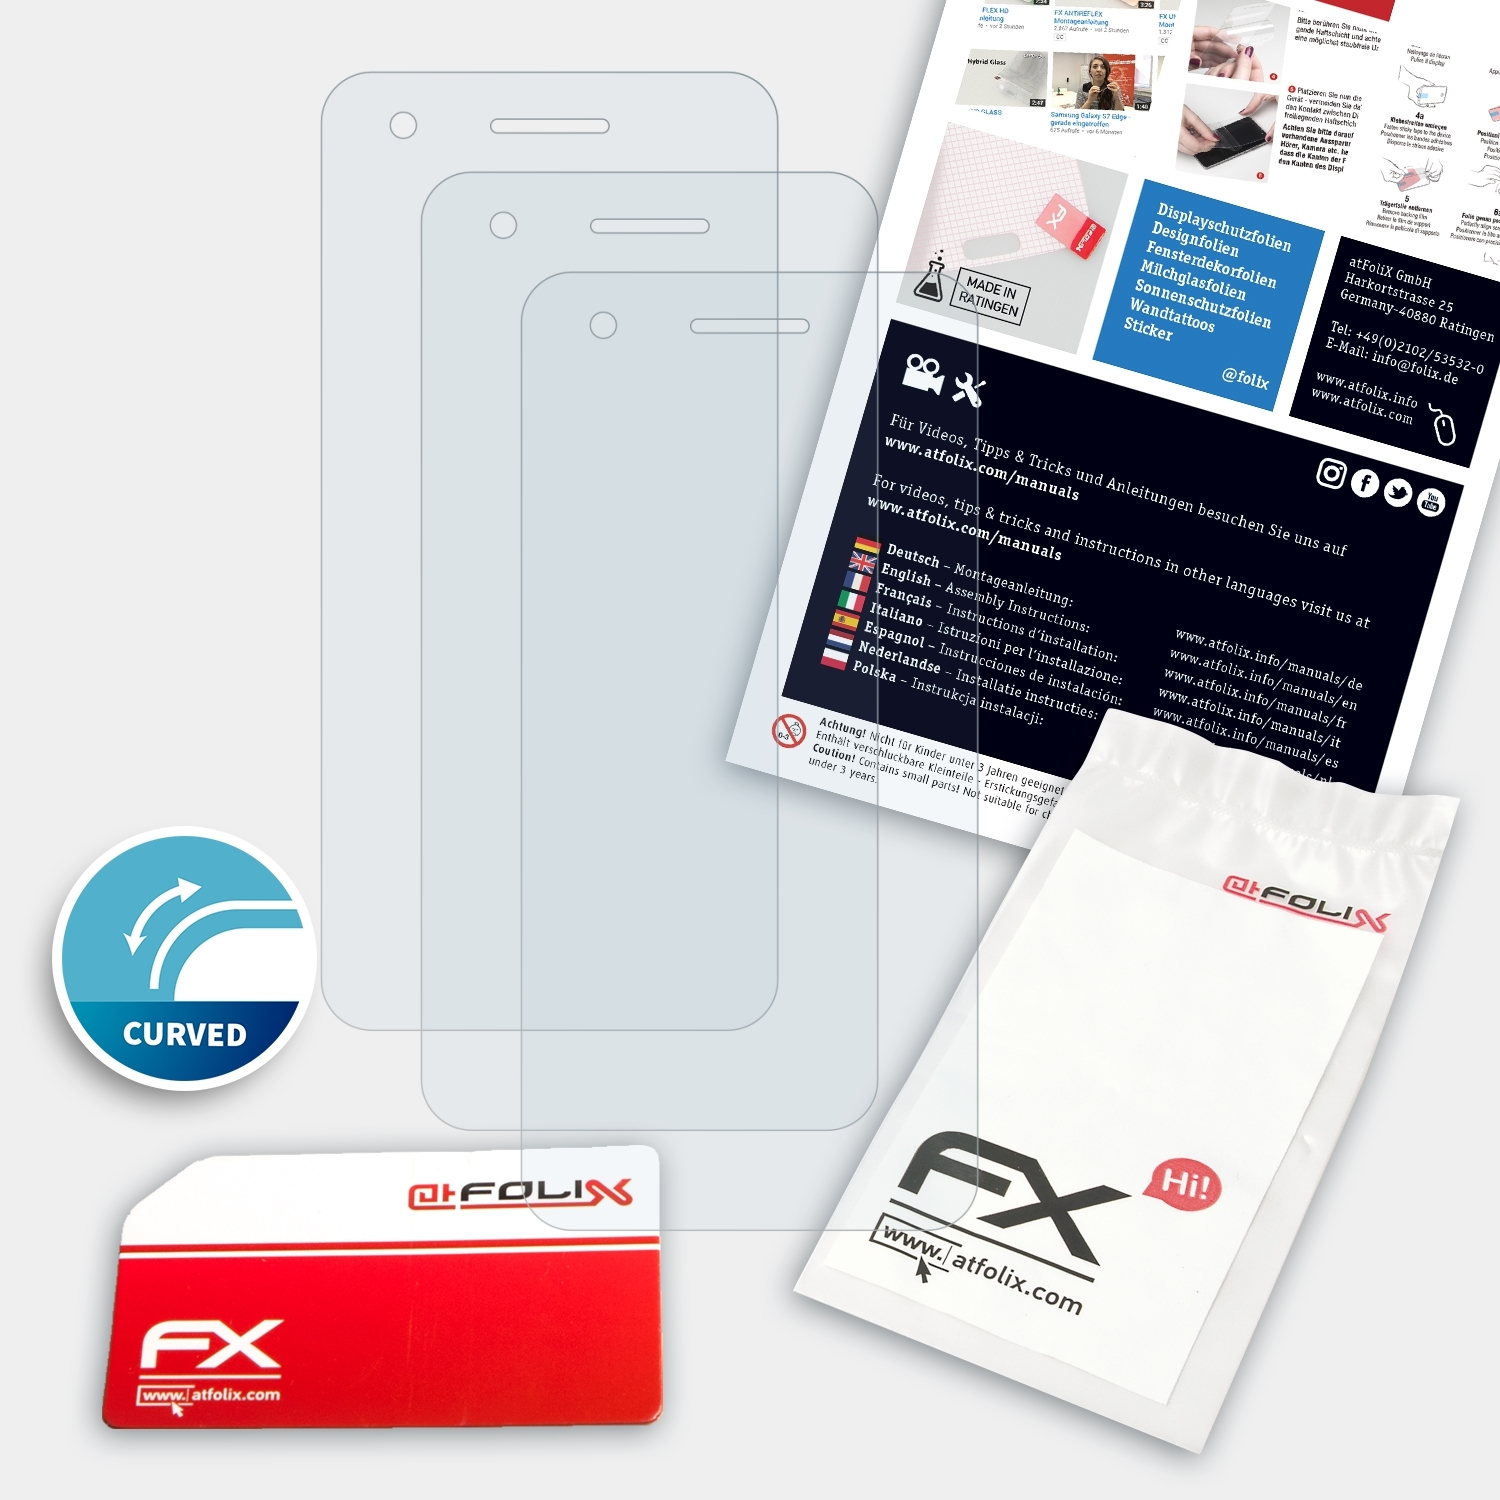 3x Smart Vodafone V8) FX-ActiFleX ATFOLIX Displayschutz(für